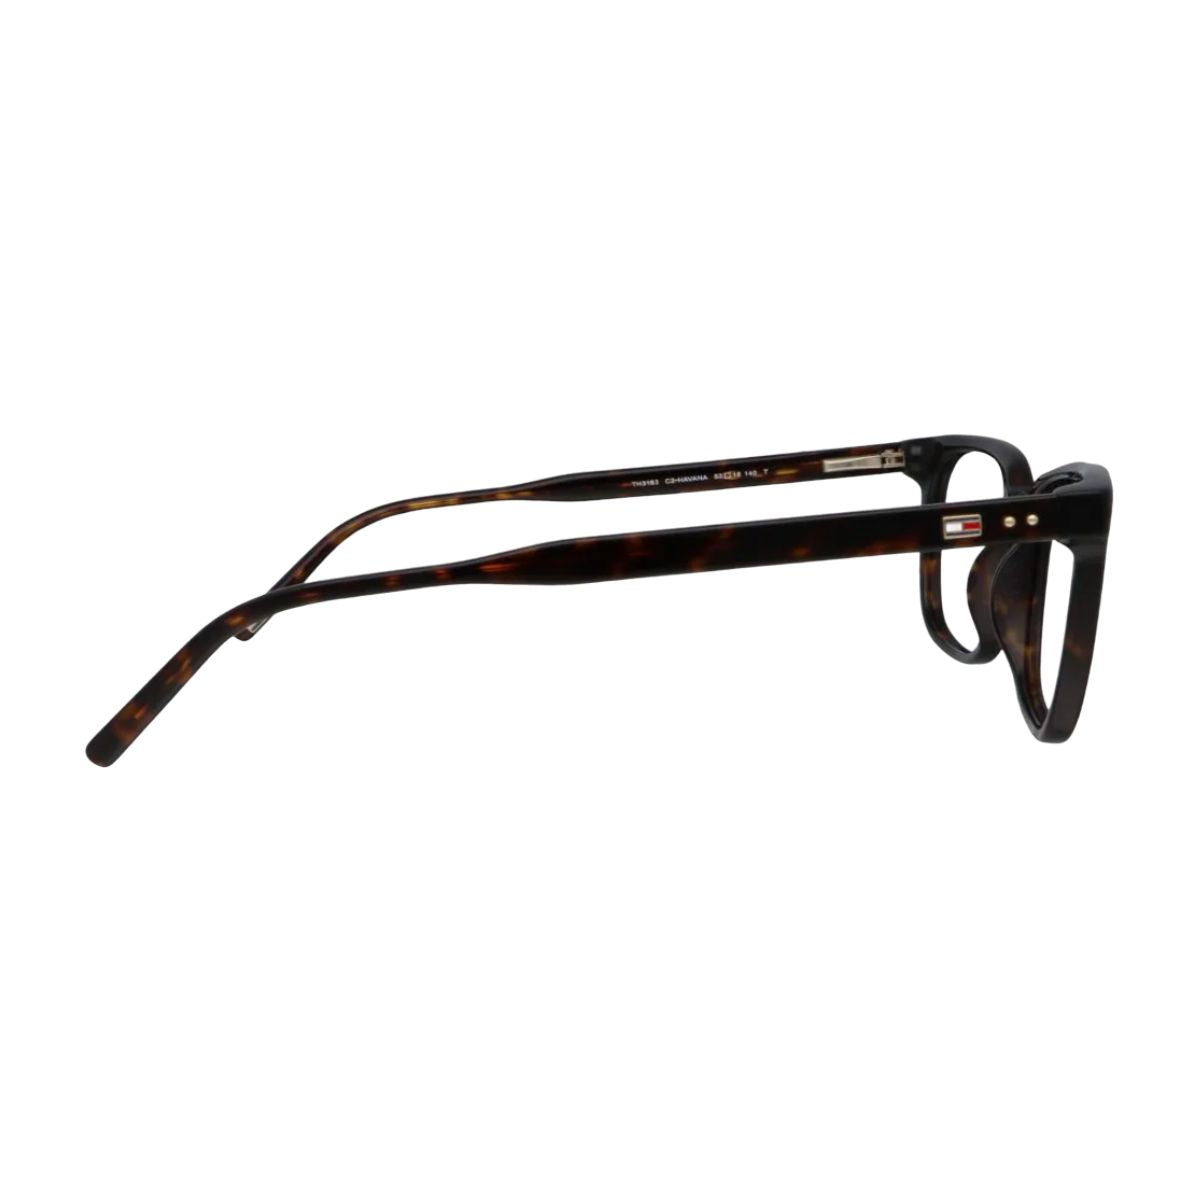 "Tommy Hilfiger 3183 C2 eyewear glassses frame for men's online at optorium"